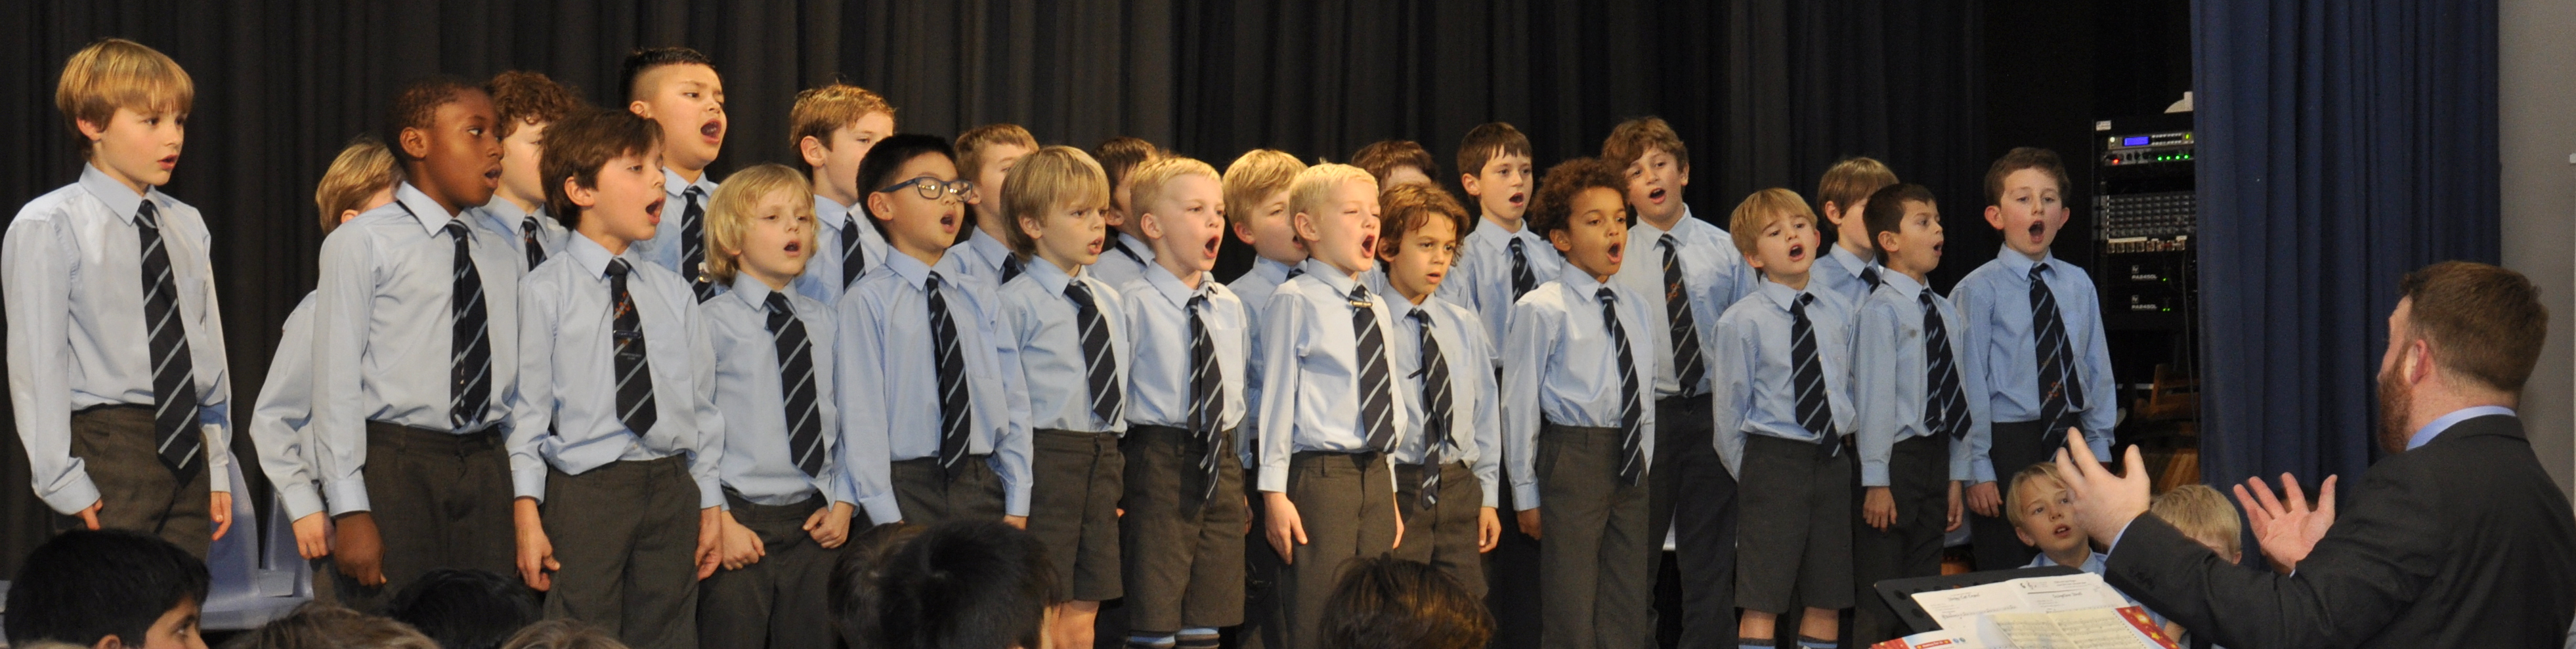 junior choir papplewick school